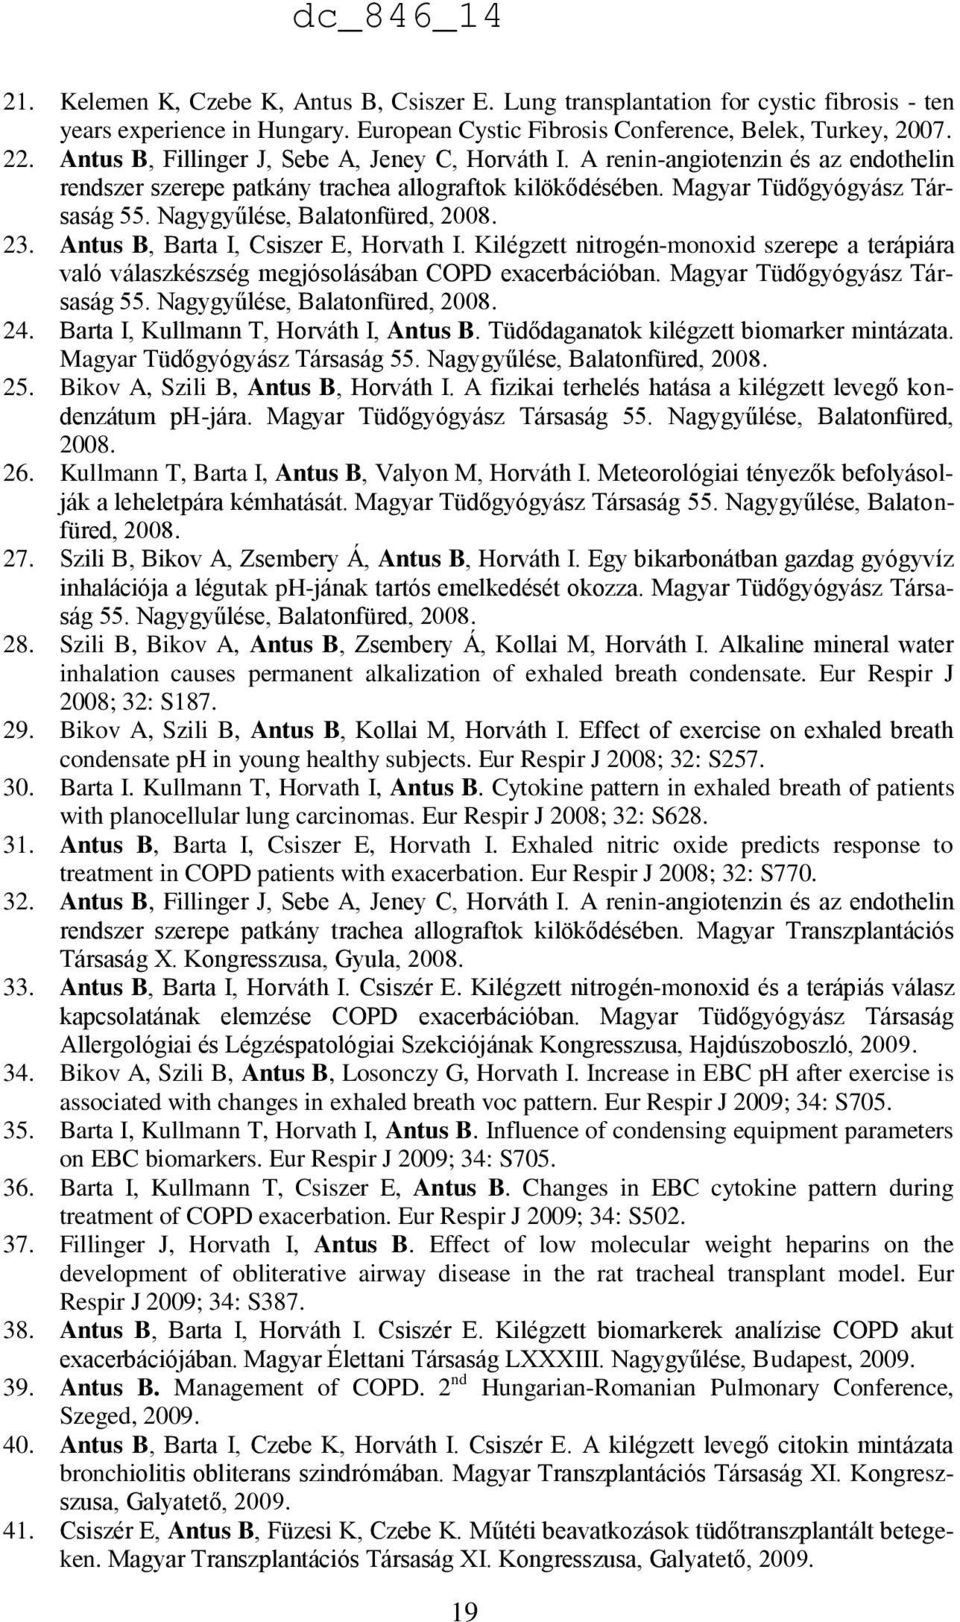 Nagygyűlése, Balatonfüred, 2008. 23. Antus B, Barta I, Csiszer E, Horvath I. Kilégzett nitrogén-monoxid szerepe a terápiára való válaszkészség megjósolásában COPD exacerbációban.